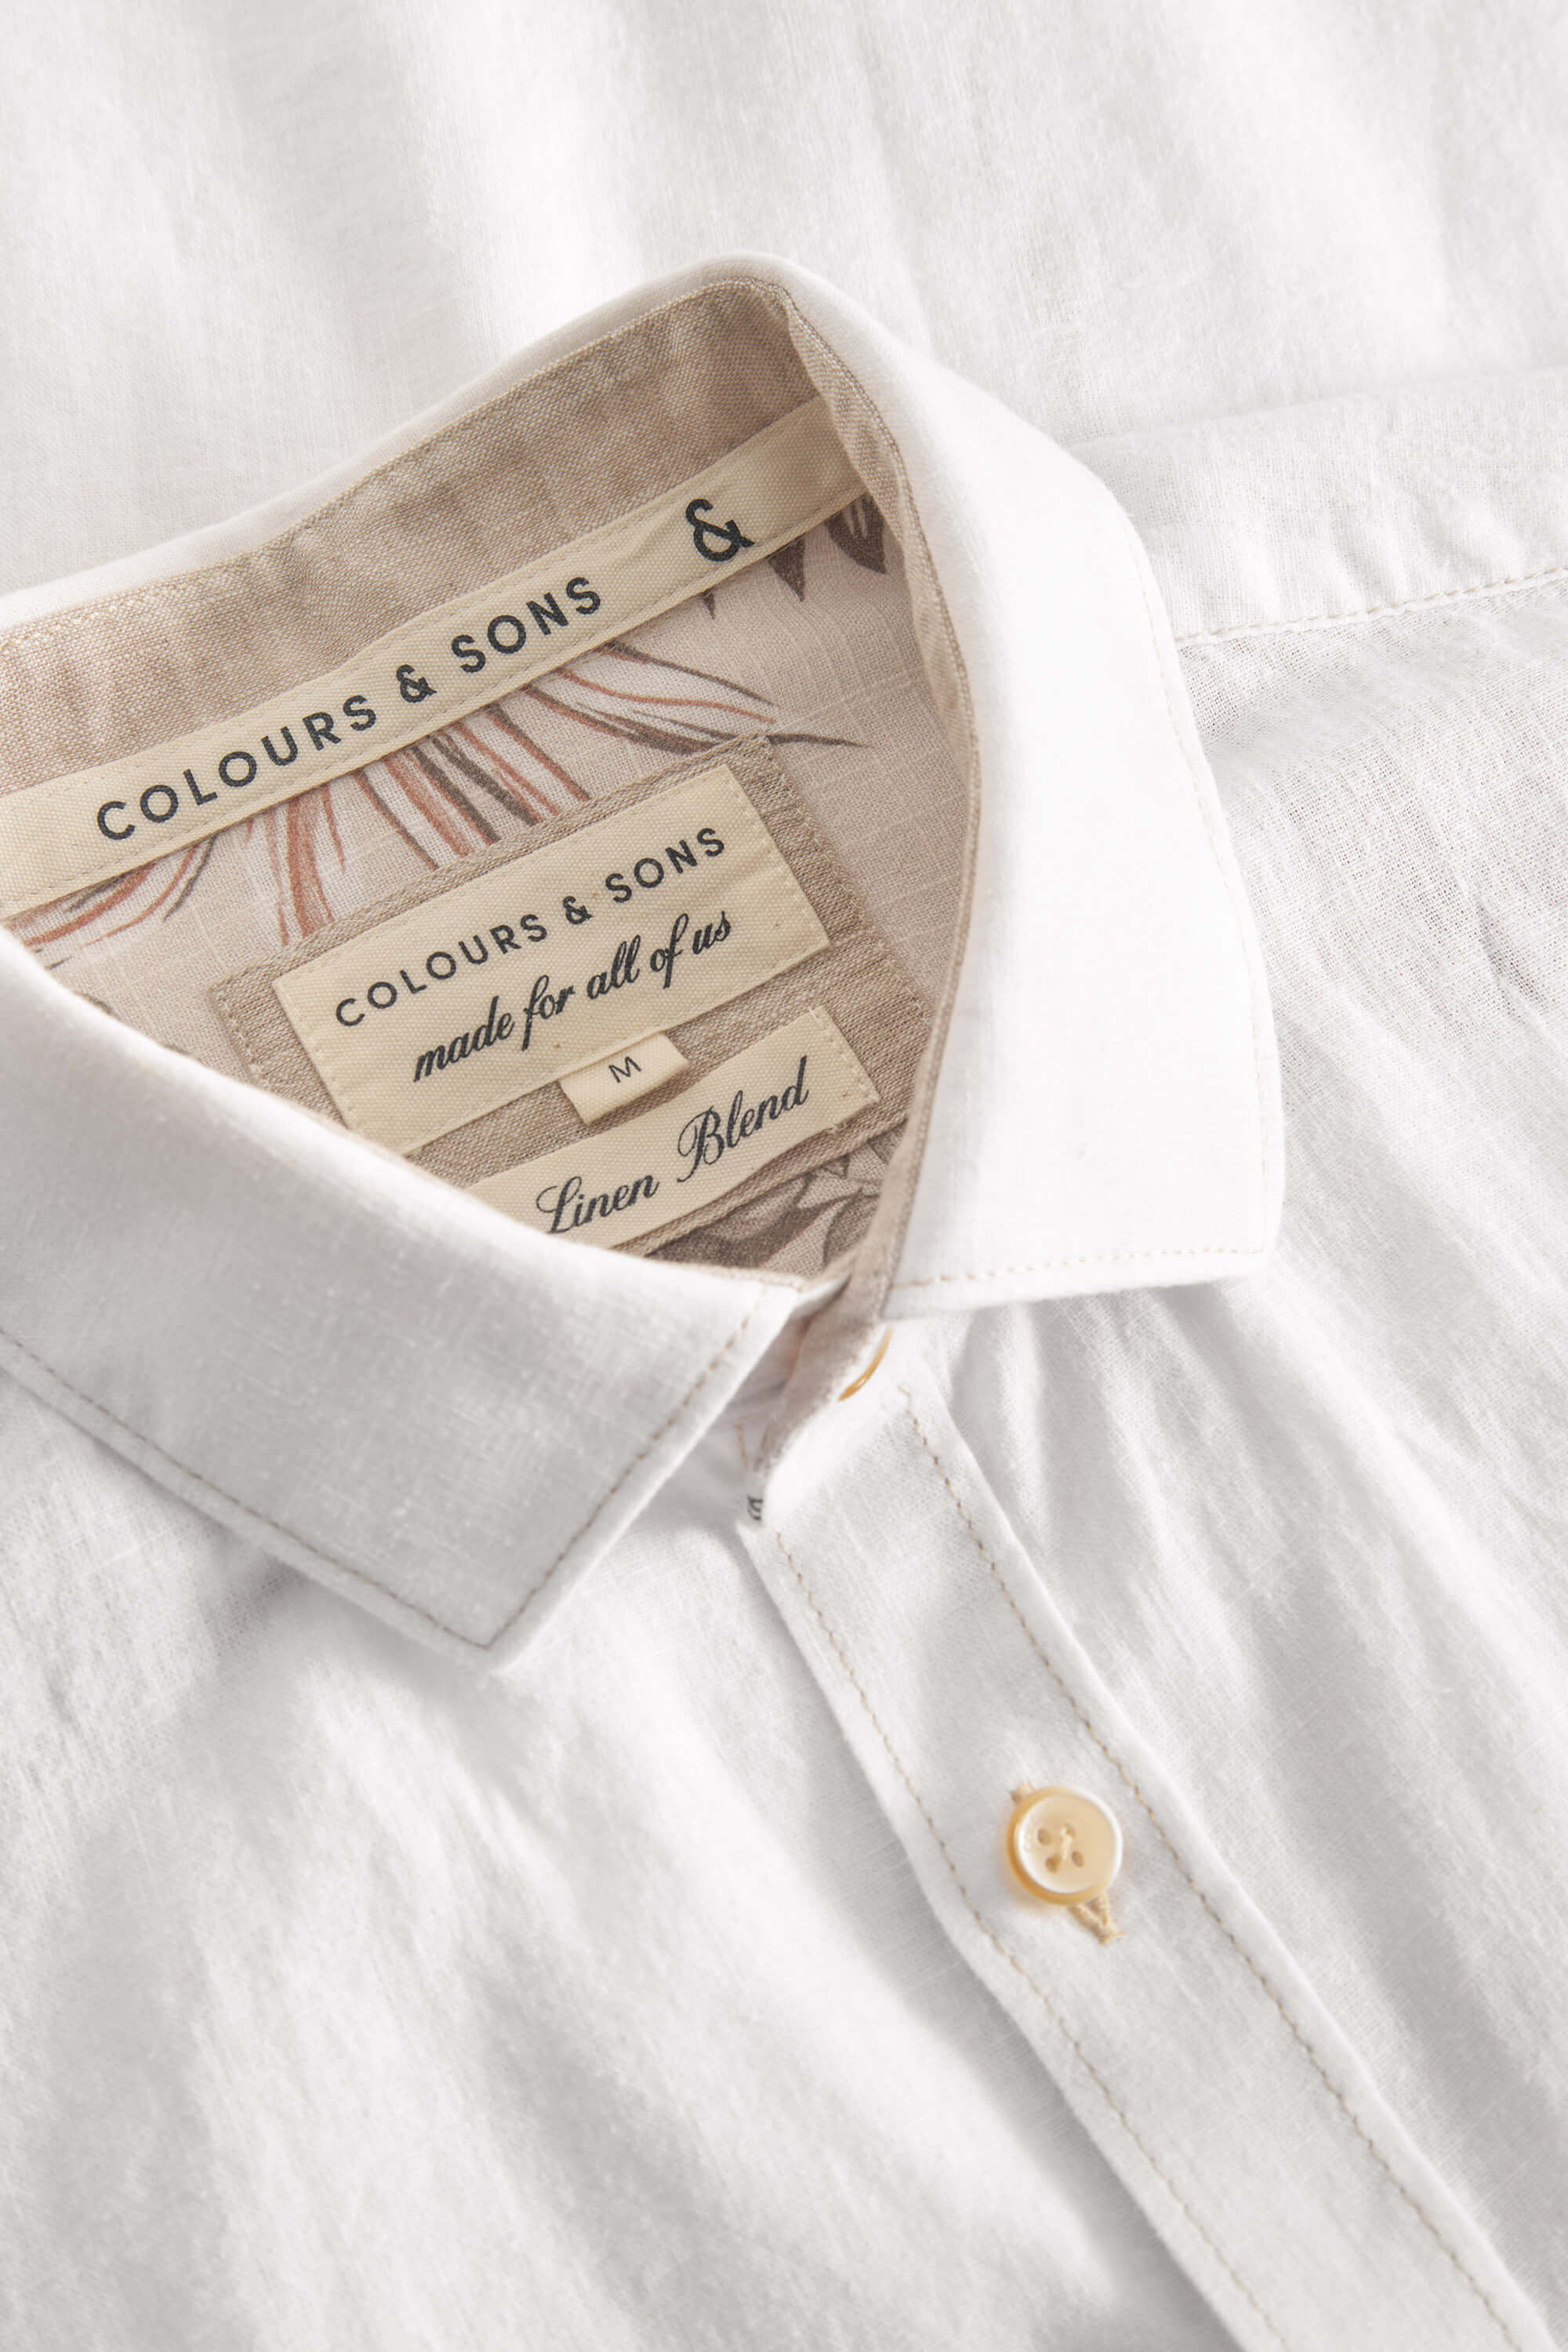 Herren Hemd, weiß, 70% Baumwolle 30% Leinen von Colours & Sons